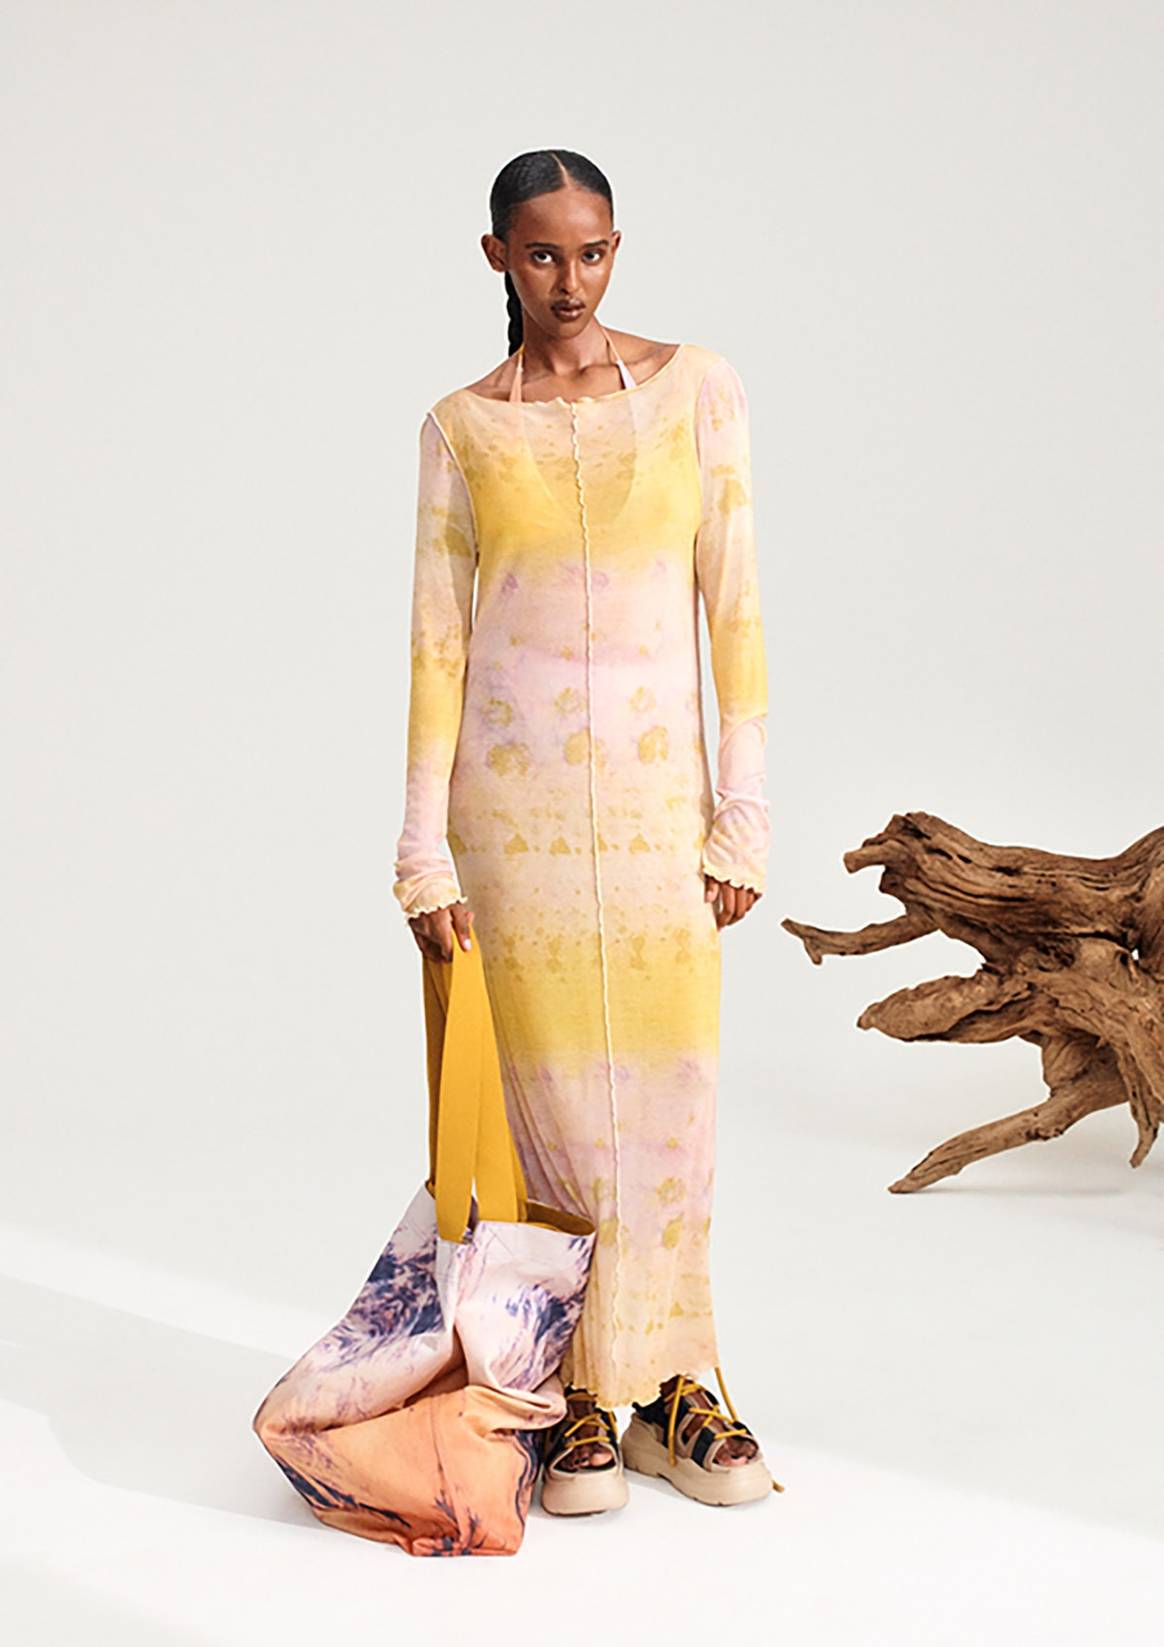 Pigmentos naturales, biotecnología e impresión digital: H&M lleva la sostenibilidad al “teñido” de sus prendas